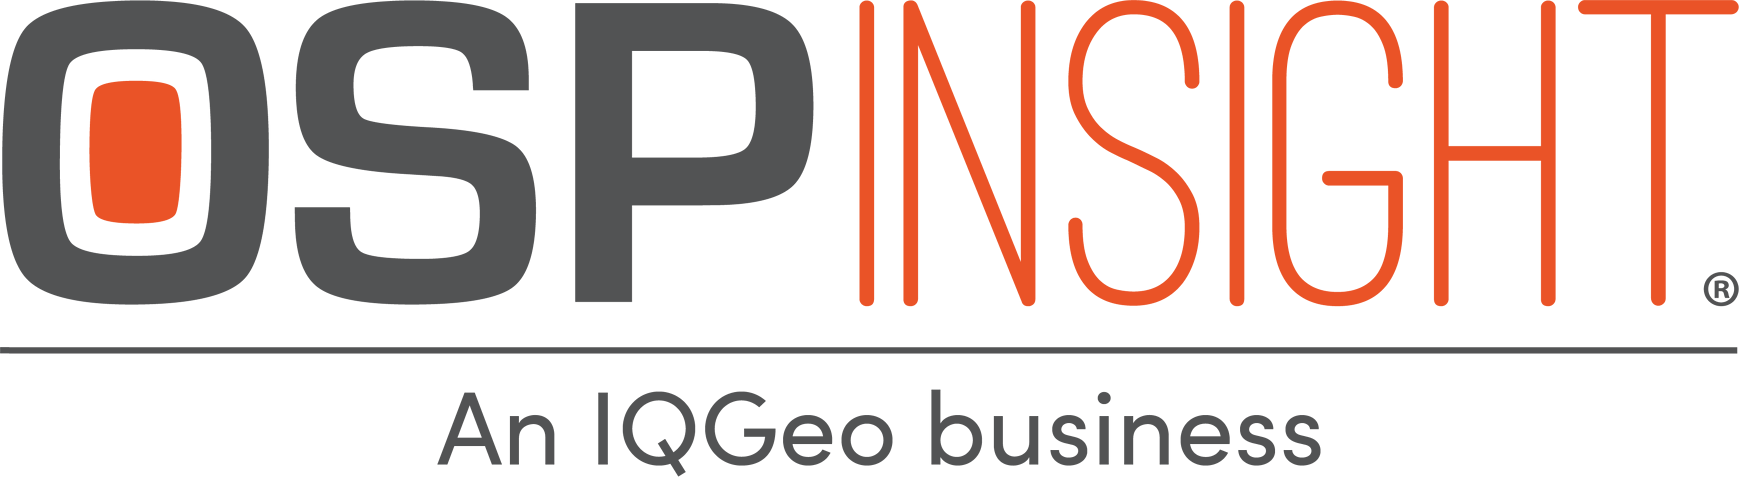 OSPInsight - An IQGeo Business (Transparent)